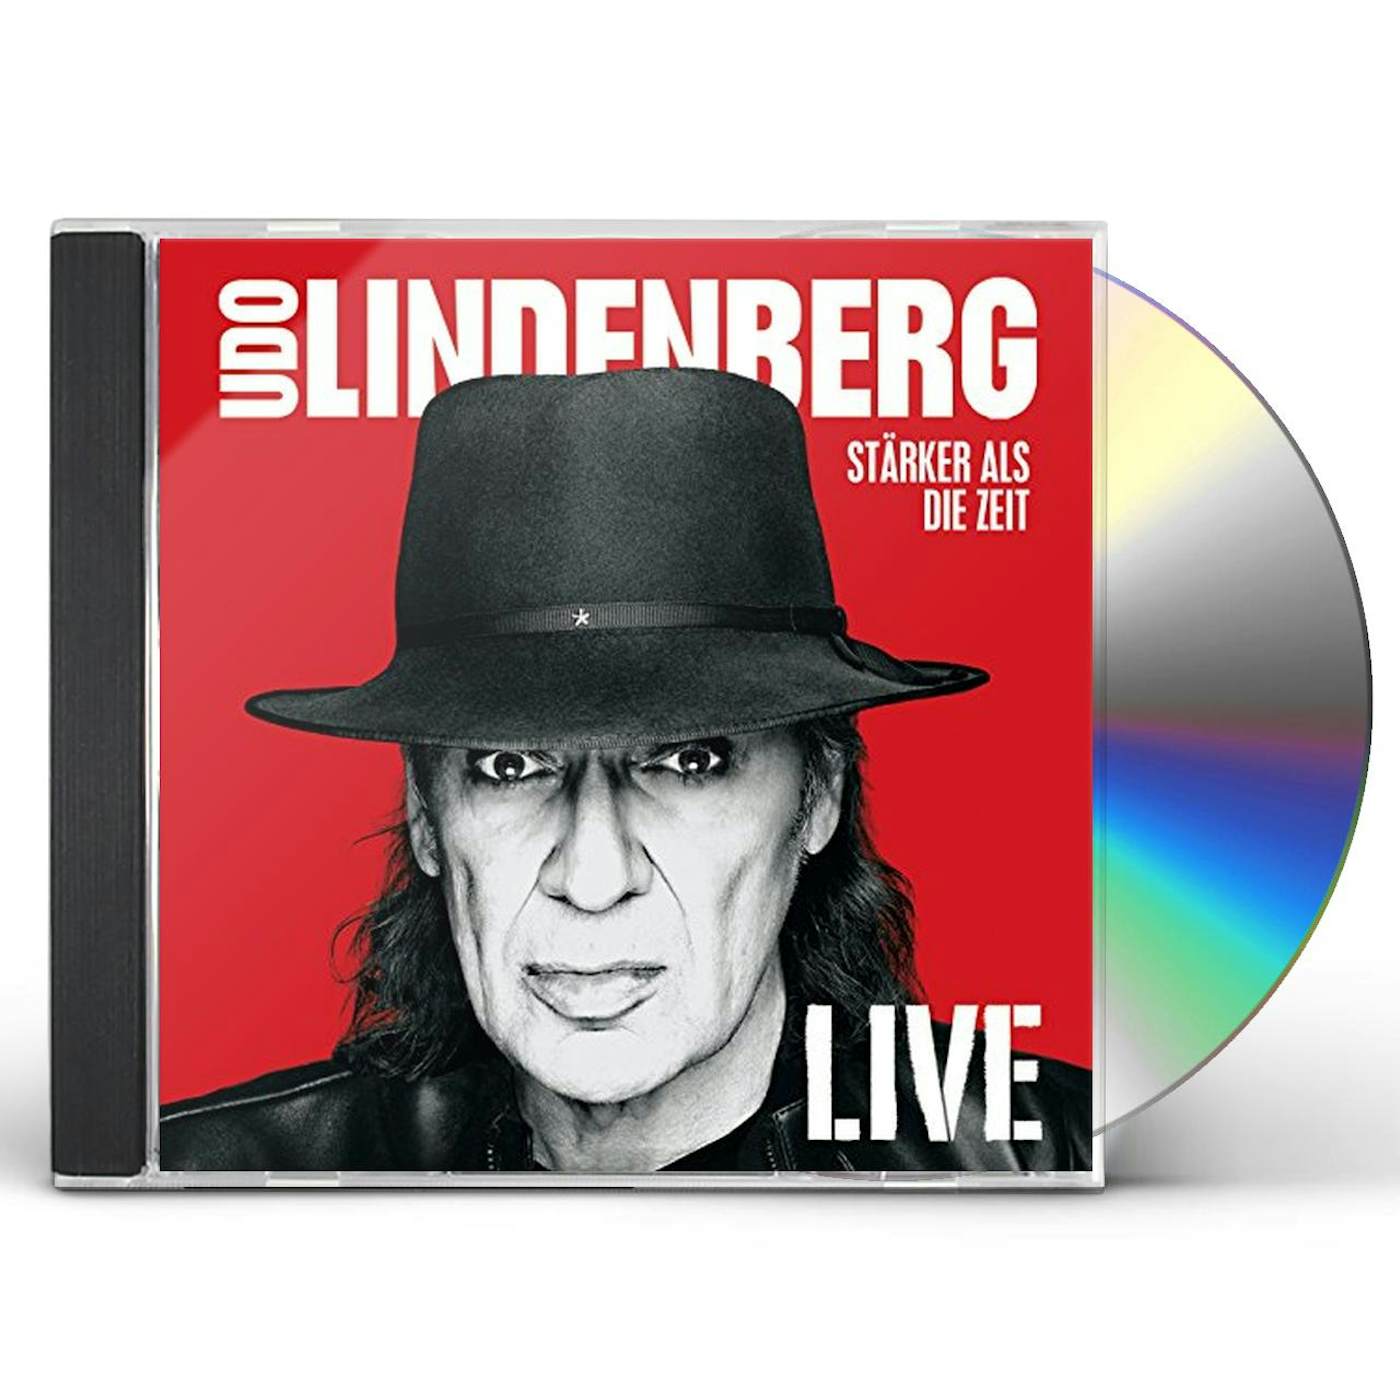 Udo Lindenberg STARKER ALS DIE ZEIT LIVE CD